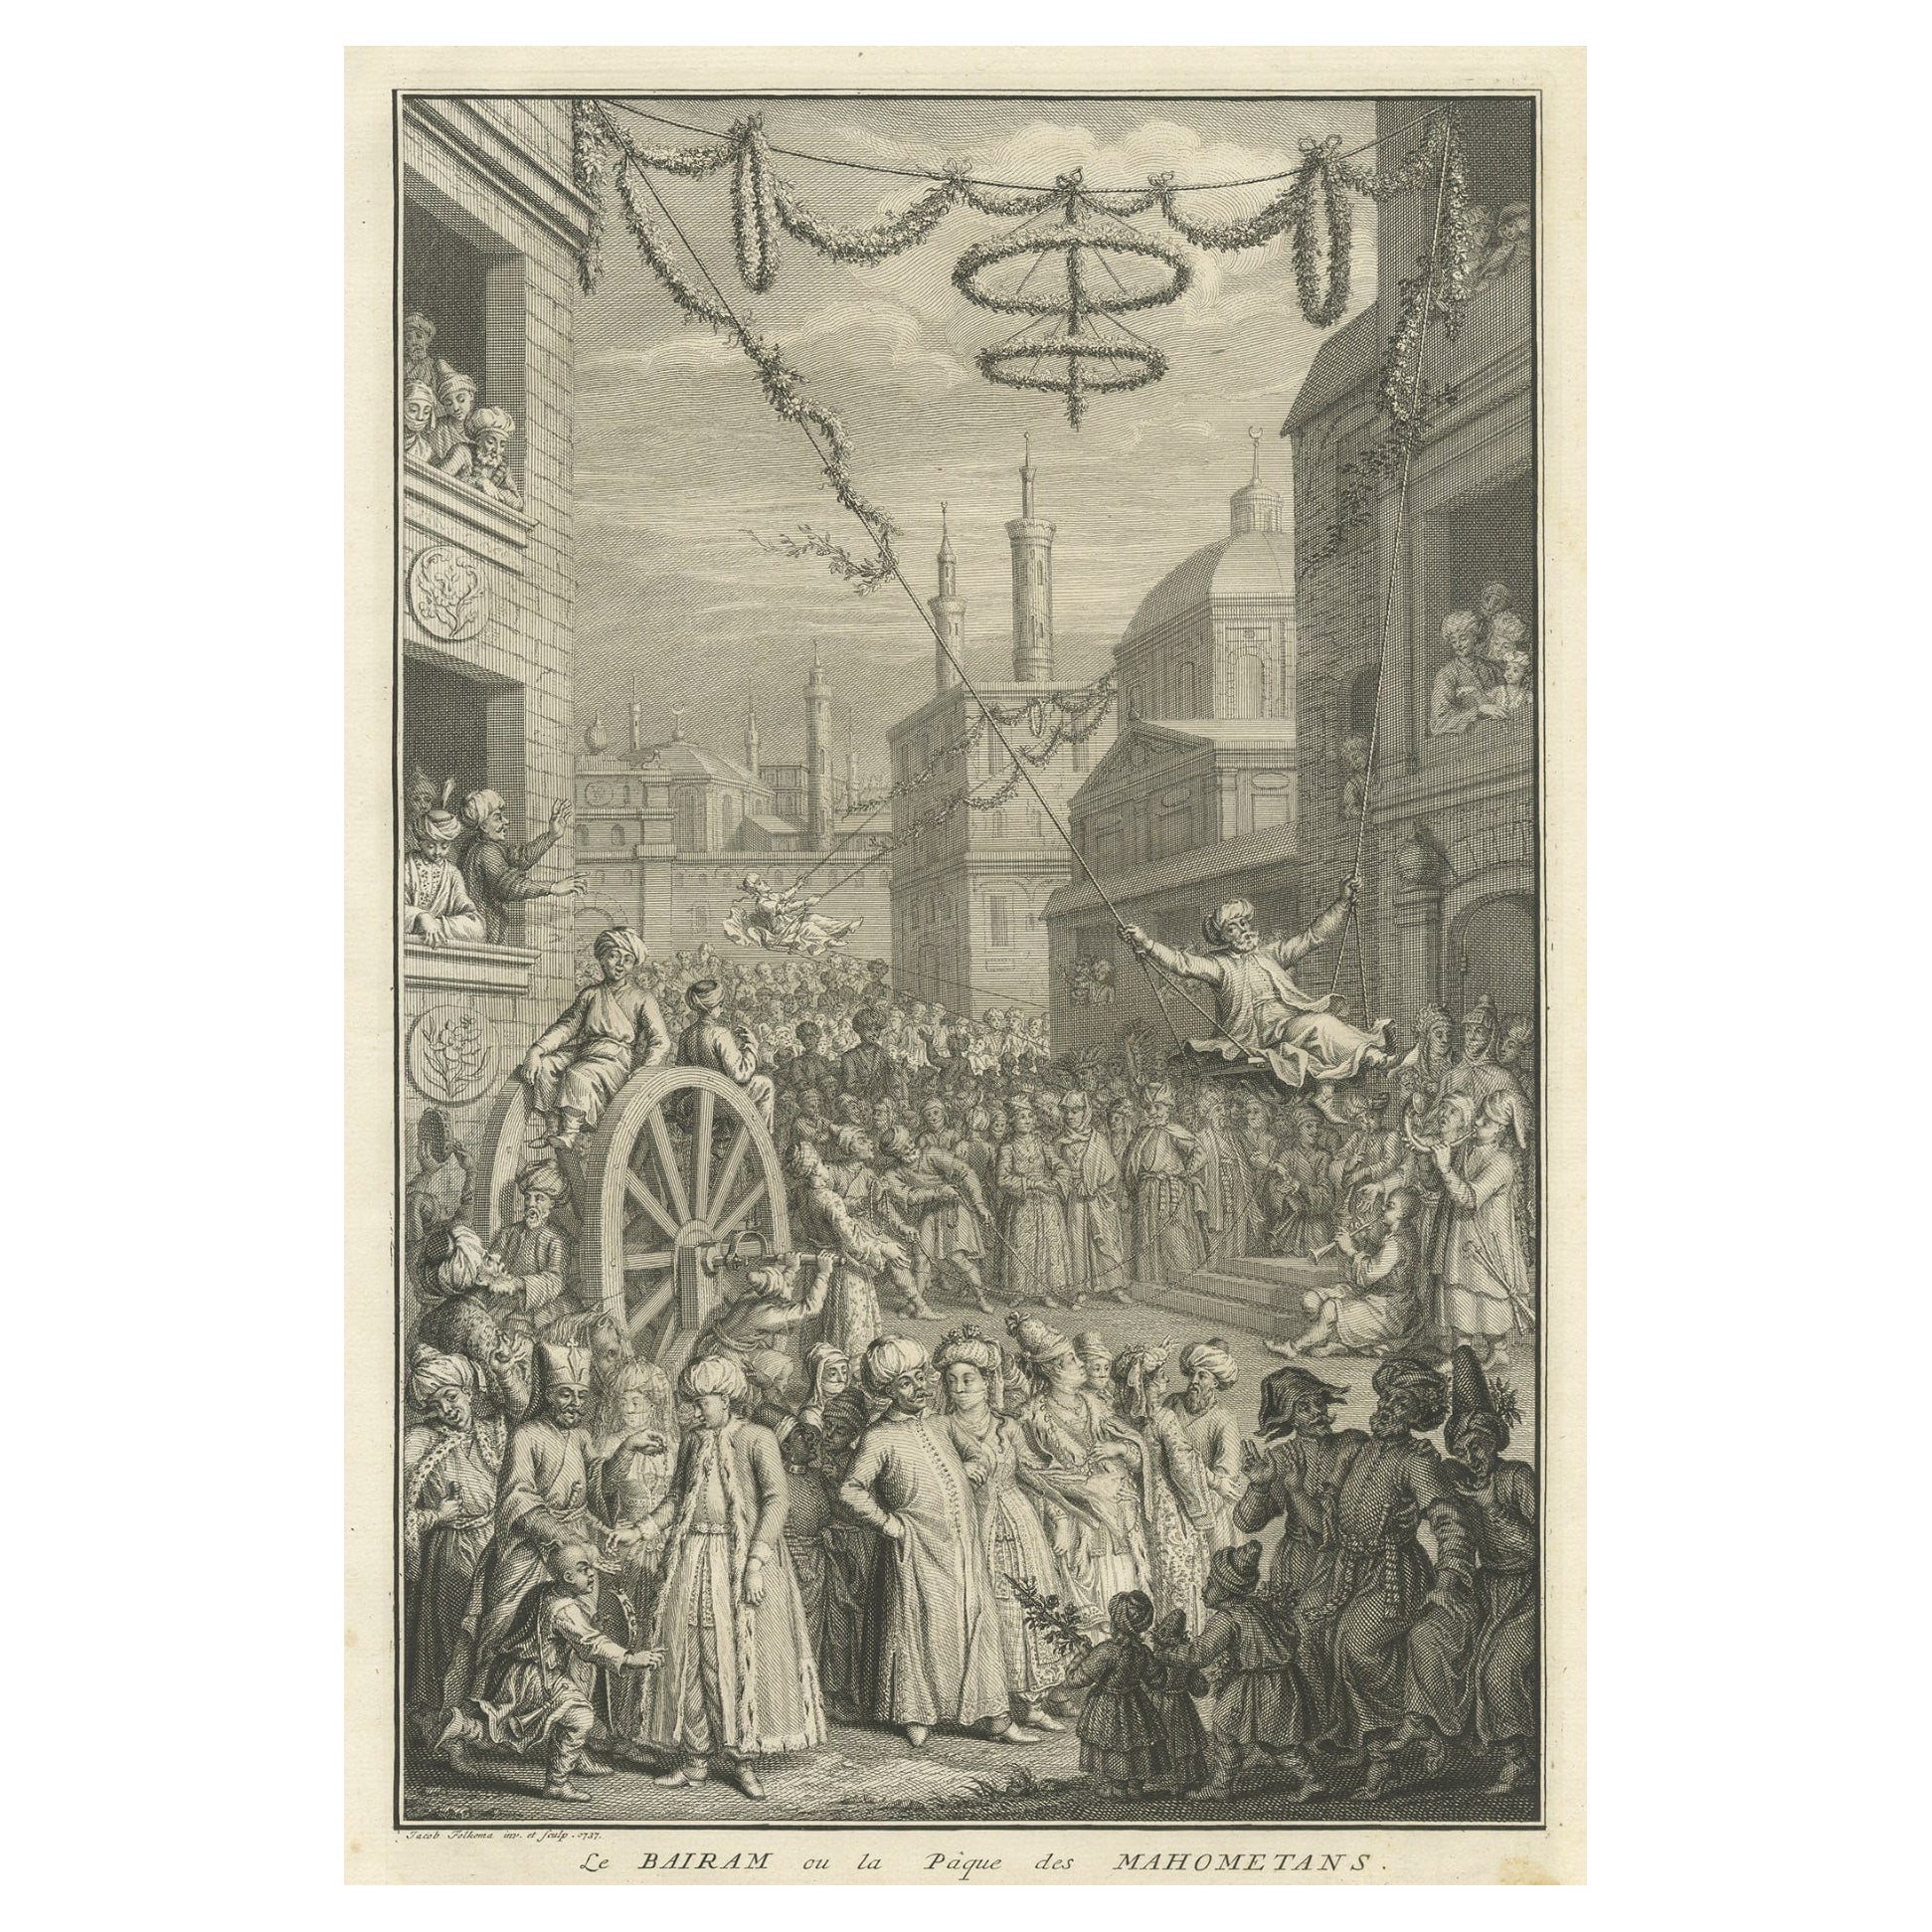 Old Engraving der Bairam-Feier, der Oster der muslimischen Muslime, 1737